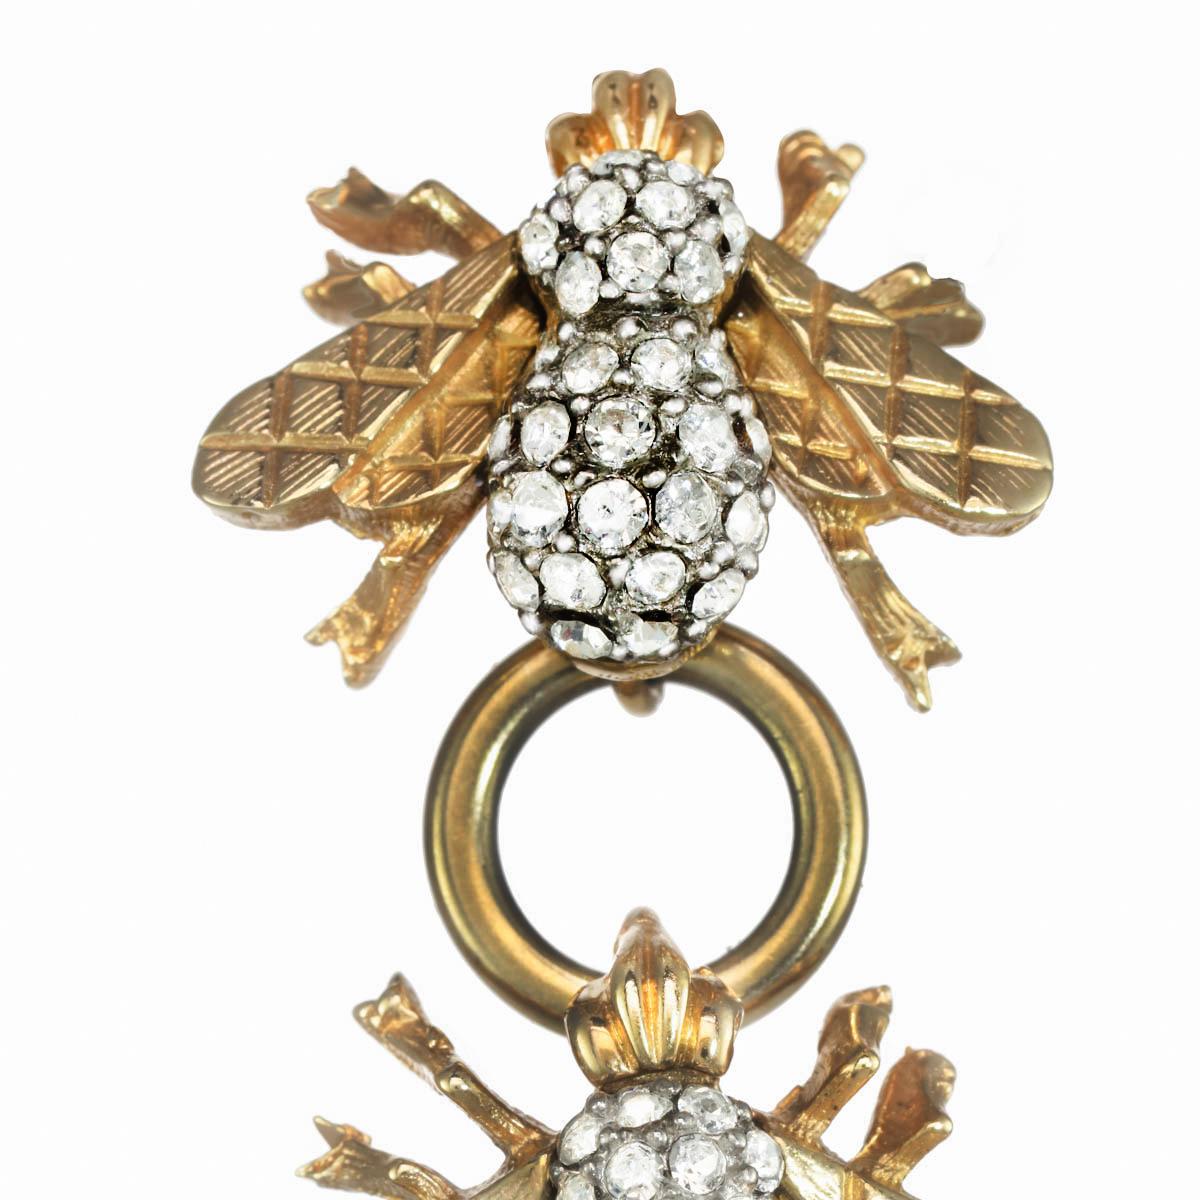 Quatre abeilles du patrimoine CINER, avec des connecteurs en or poli, forment cette magnifique boucle d'oreille linéaire. Avec des ailes matelassées dorées magnifiquement détaillées et des accents lumineux en cristaux de strass Swarovski, ces